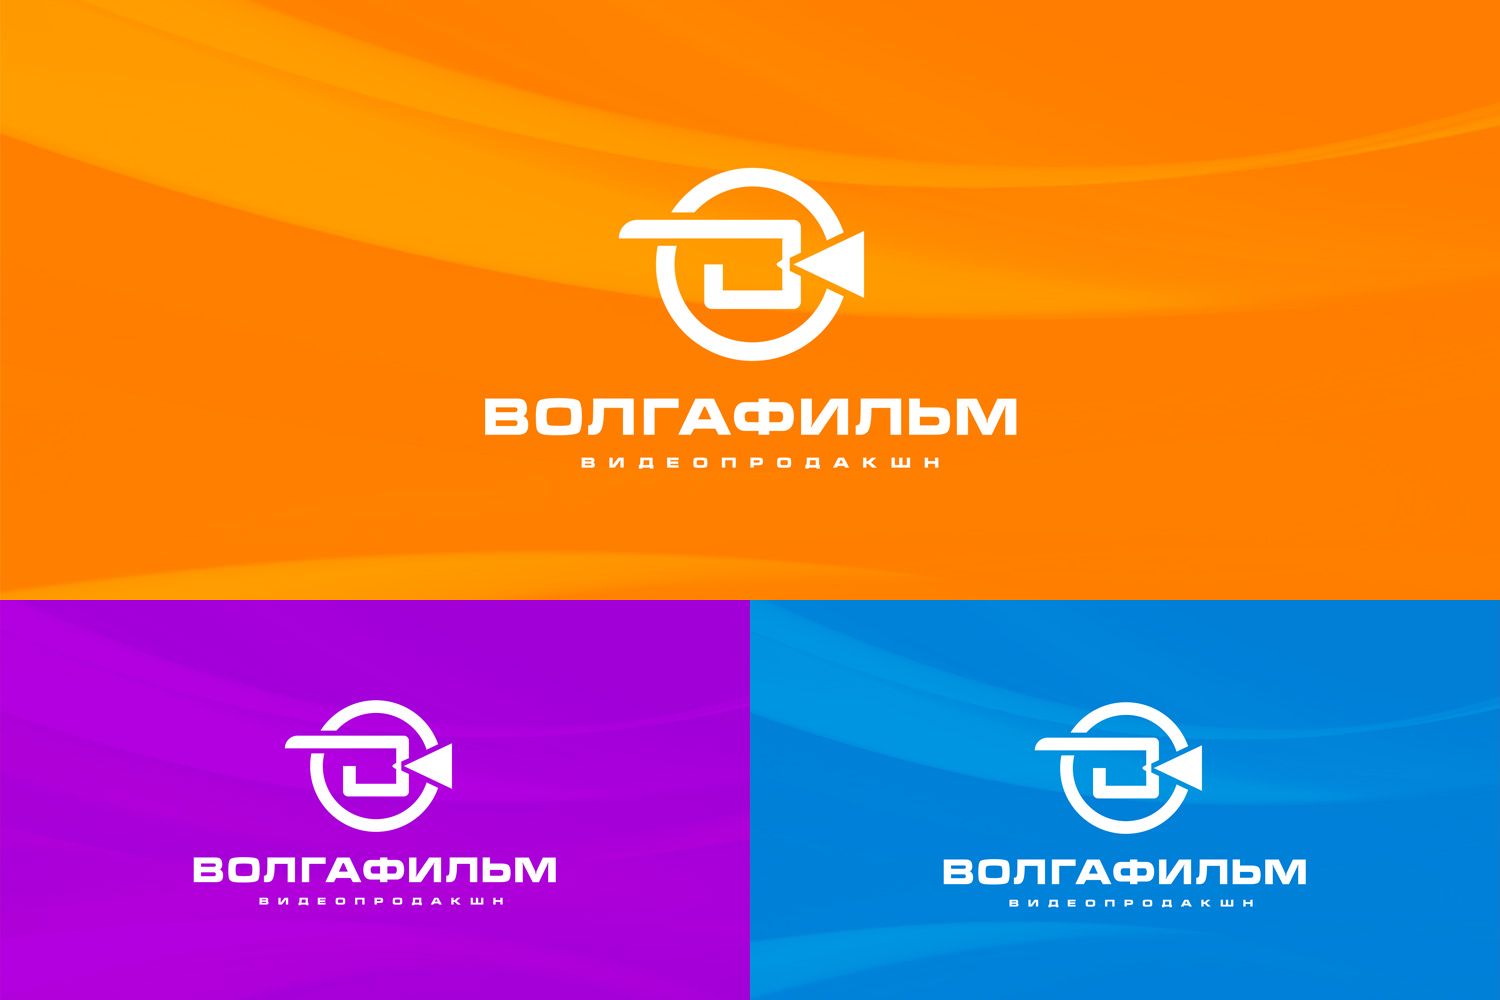 Лого и фирменный стиль для Волга-фильм видеопродакшн - дизайнер Inspiration